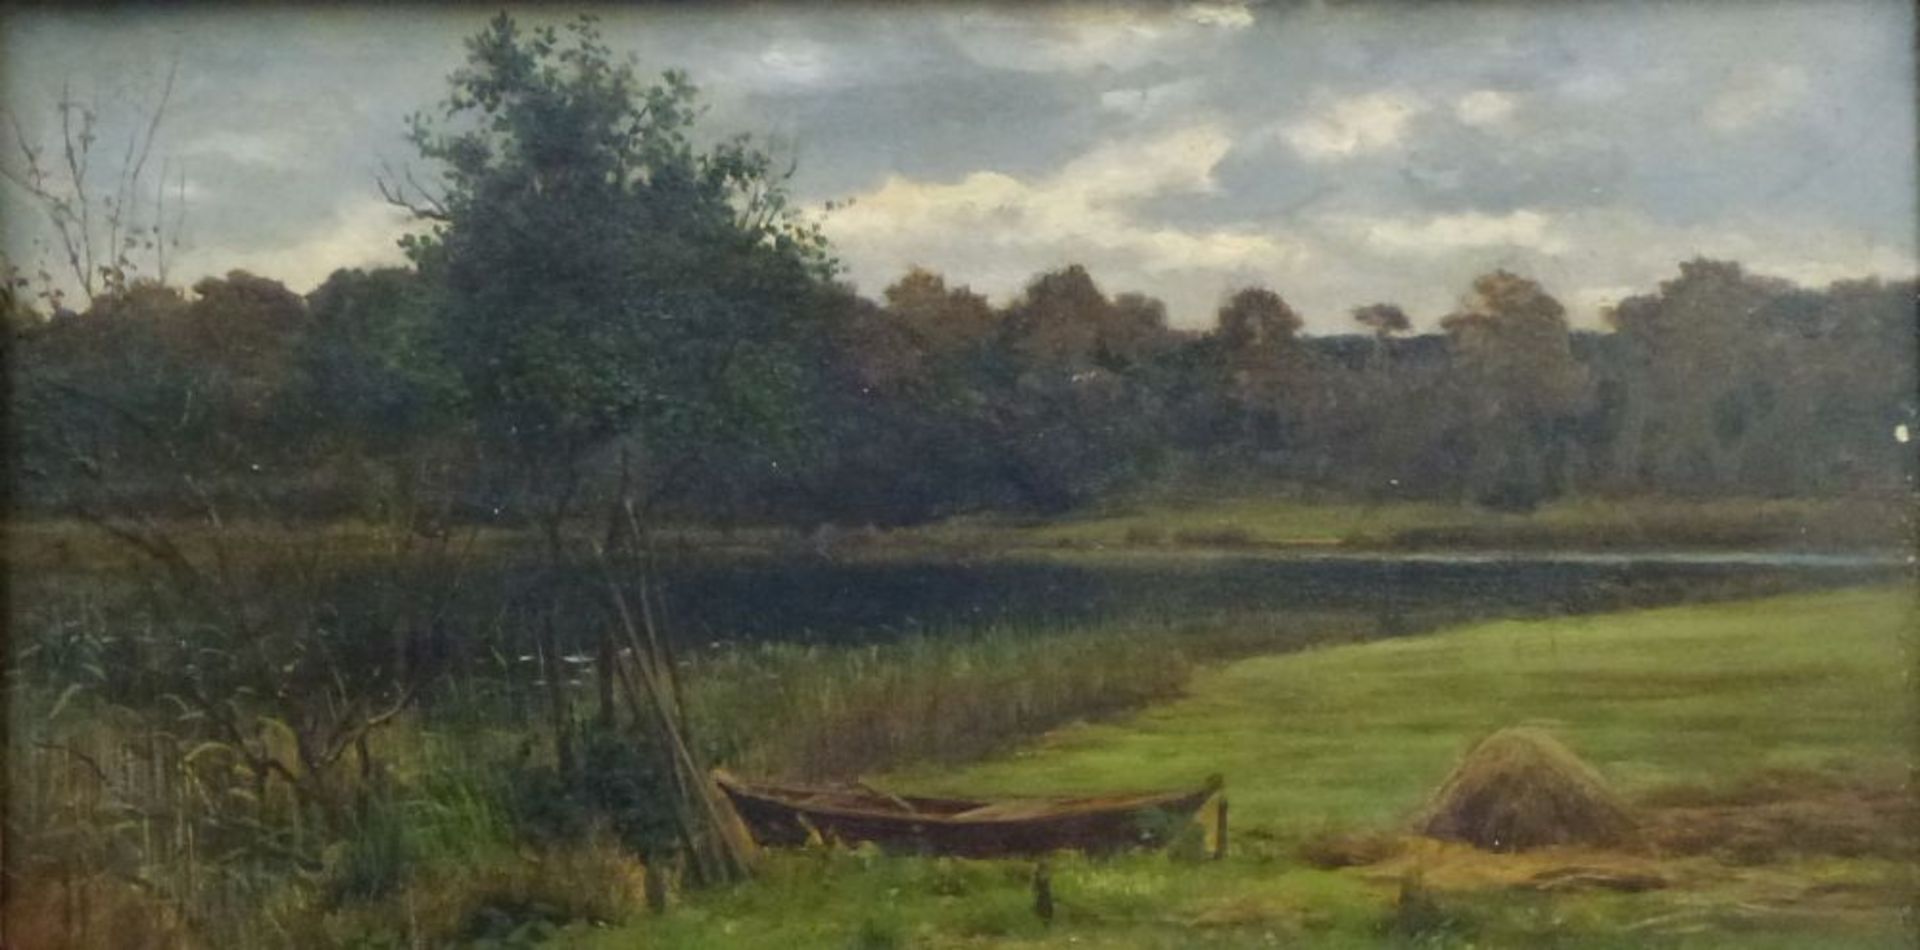 Märkische LandschaftKarl Bennewitz von Loefen(?), 1826 - 1895Öl/Platte, Sommerwiese mit Kahn am See,